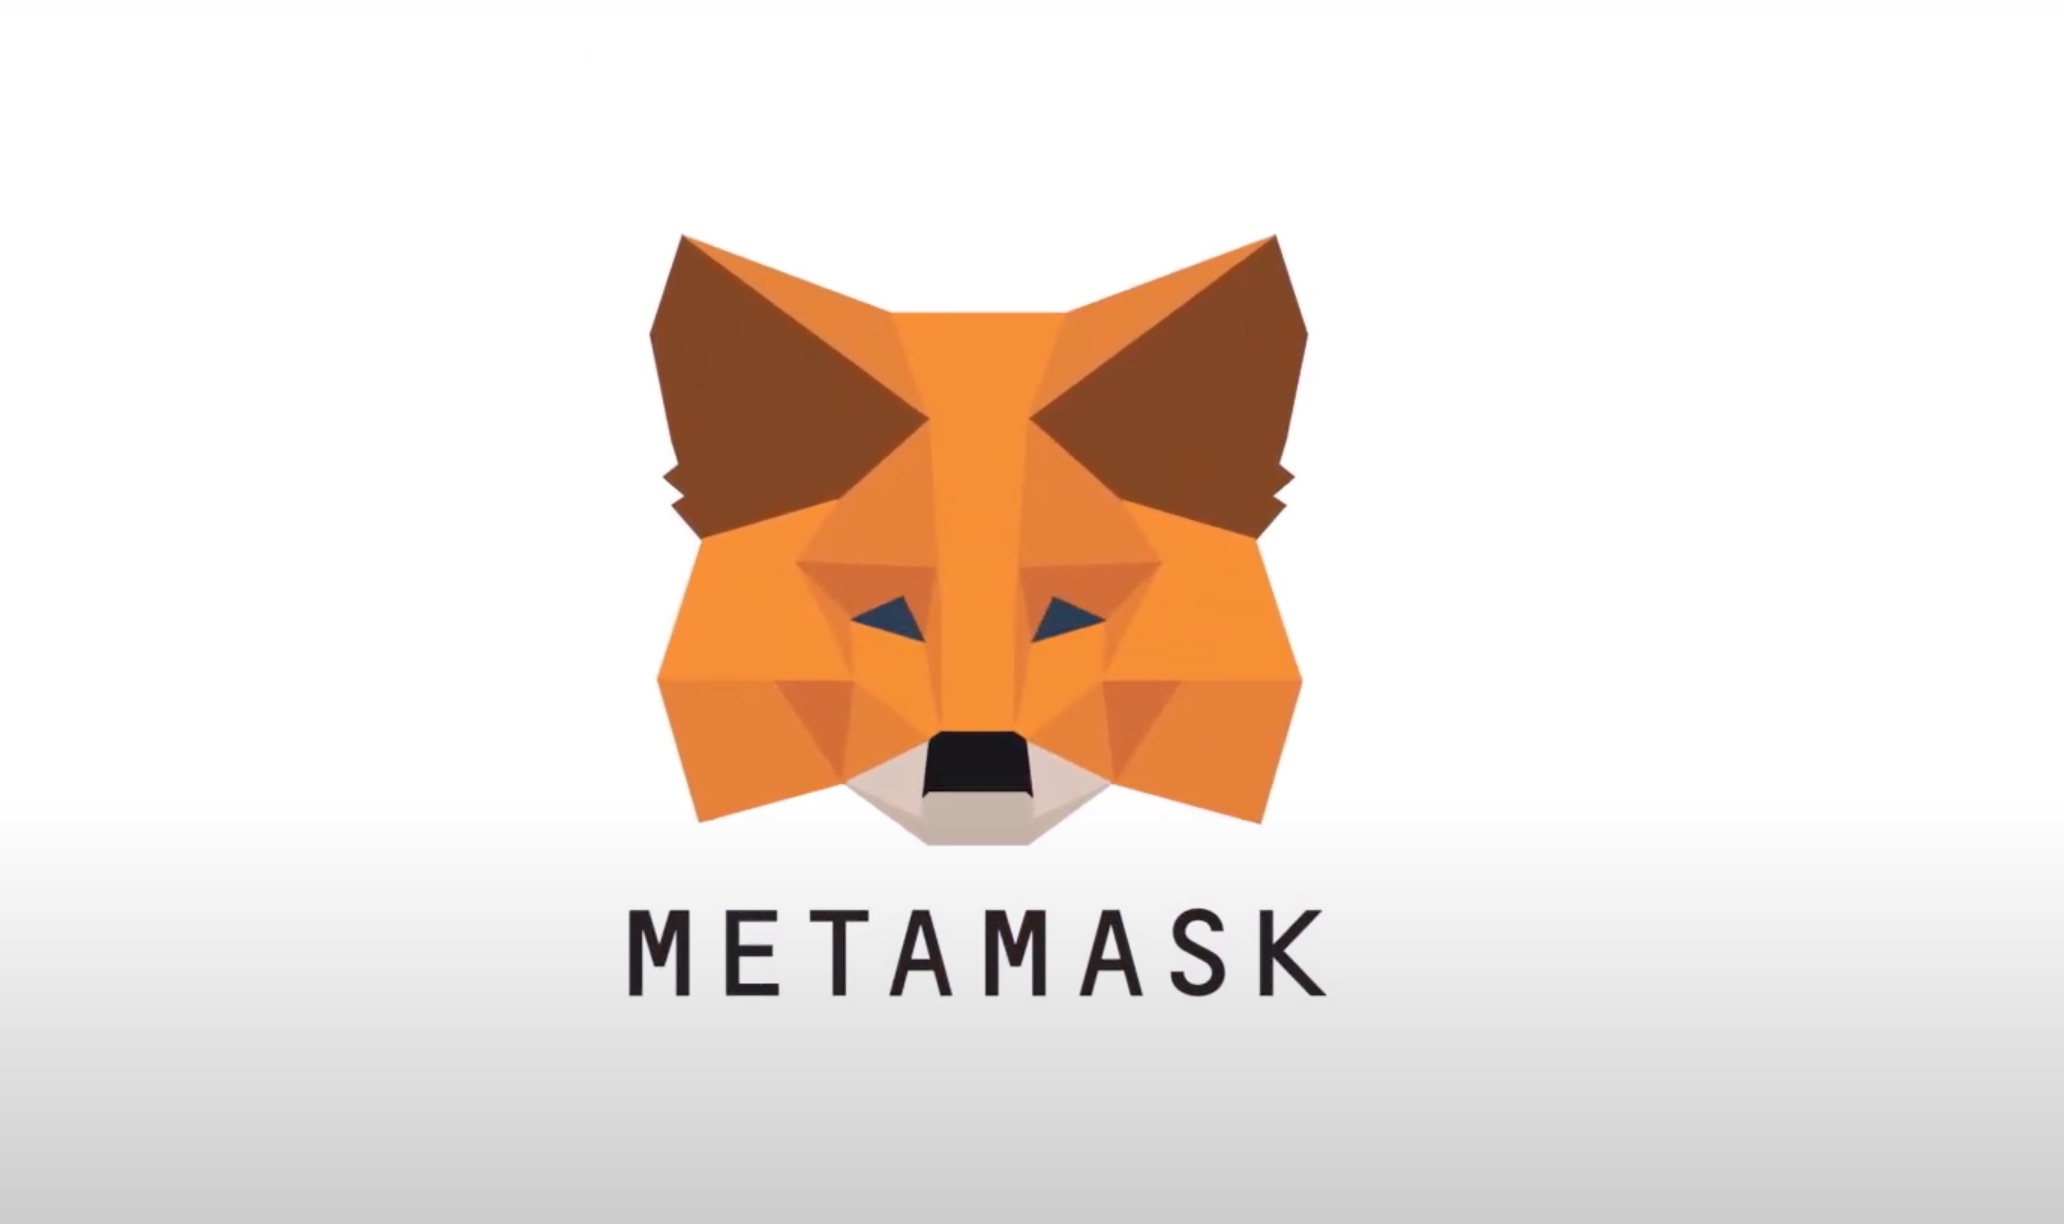 metamask loosetherdelta